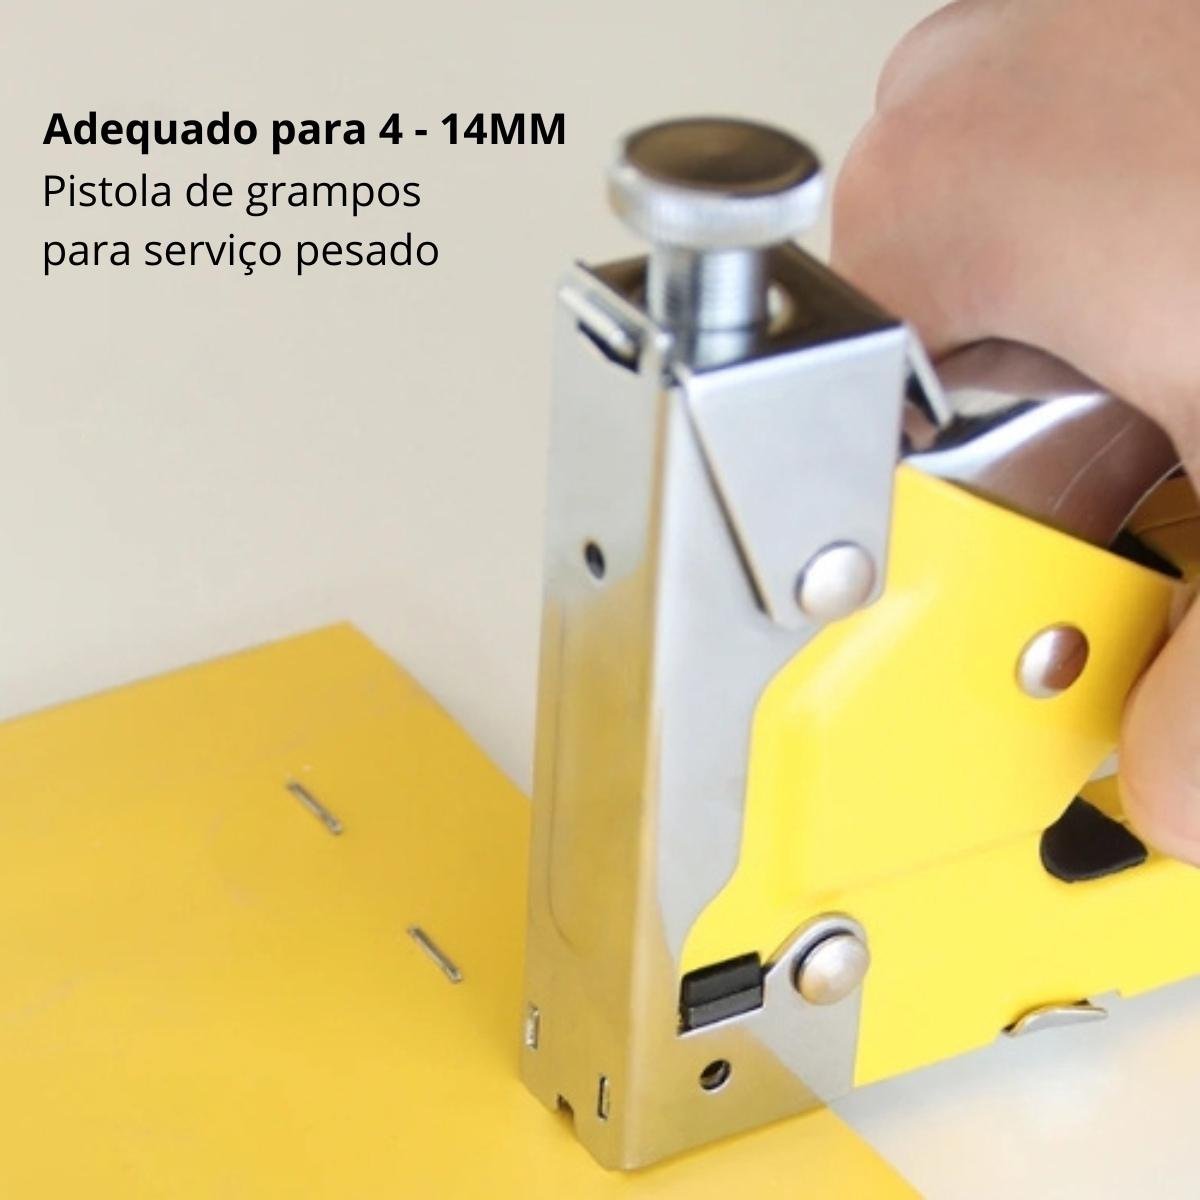 Grampeador Pinador Manual Profissional 3 em 1 Pressão Grampos T-u-reto 4 - 14mm + 2200 Grampos | Fer - 10